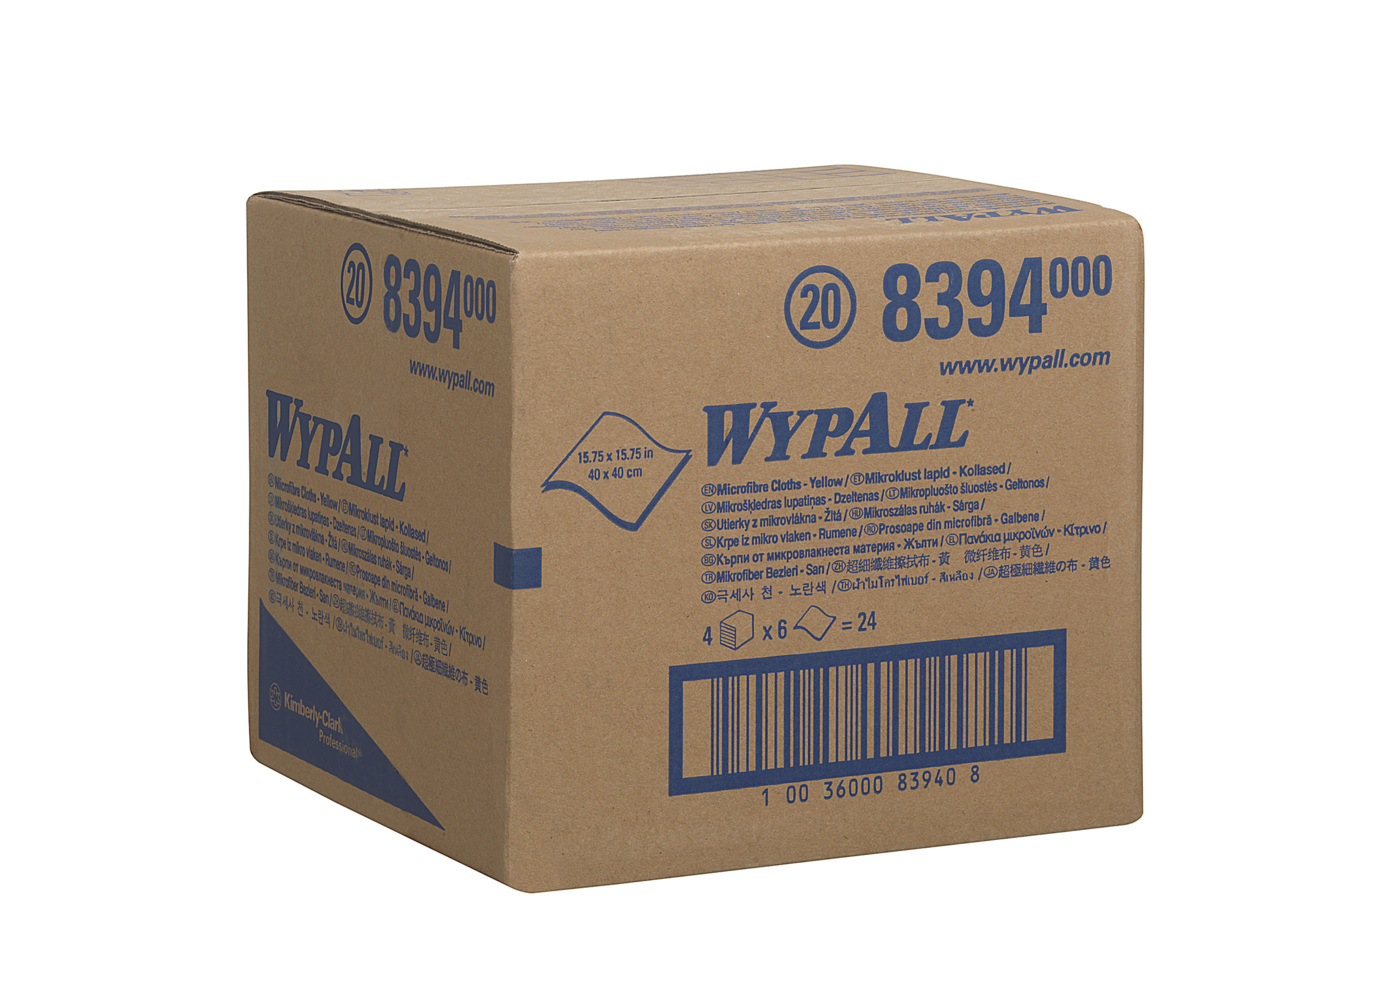 WypAll® Mikrofasertücher 8394 - 4 Päckchen mit 6 gelbe, 40 x 40 cm große Tücher (Gesamtanzahl 24) - 8394